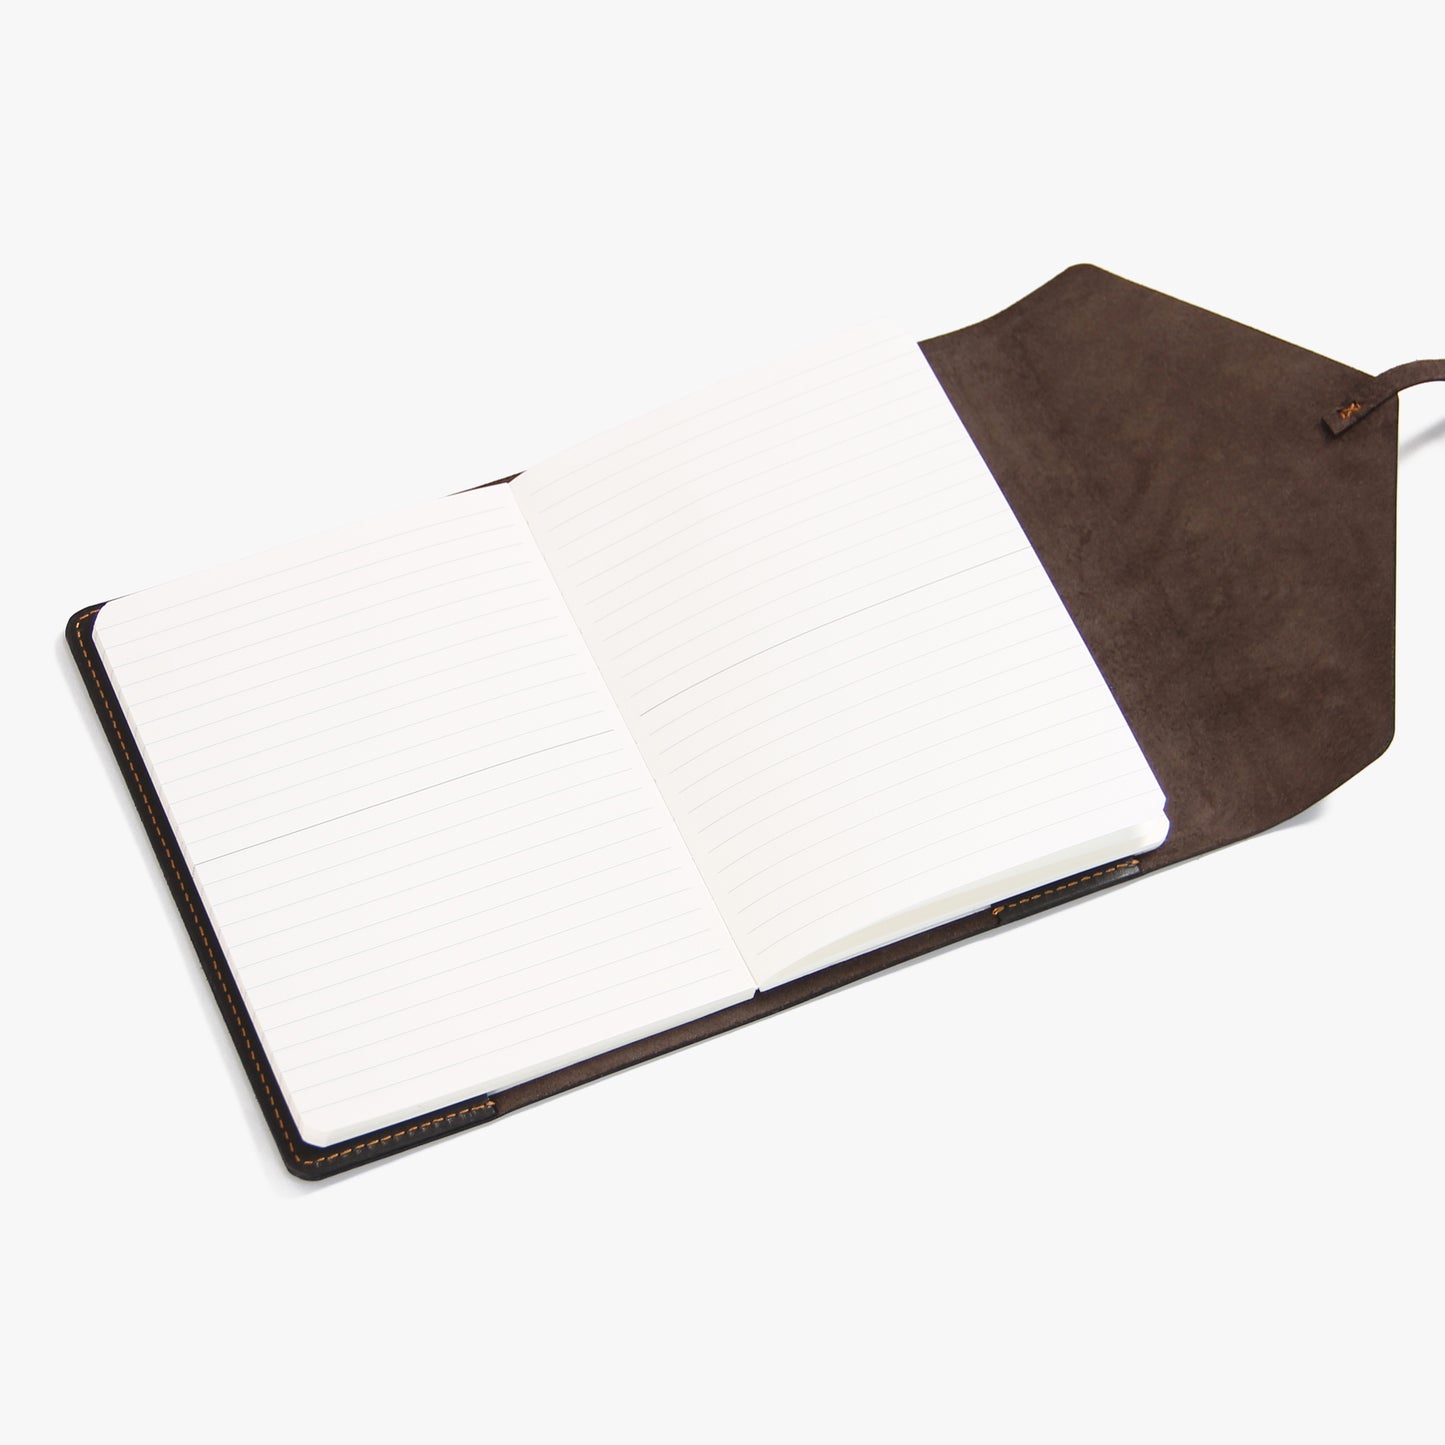 Nachfüllbares Notizbuch im A5-Tagebuch mit Umschlag und Umschlag